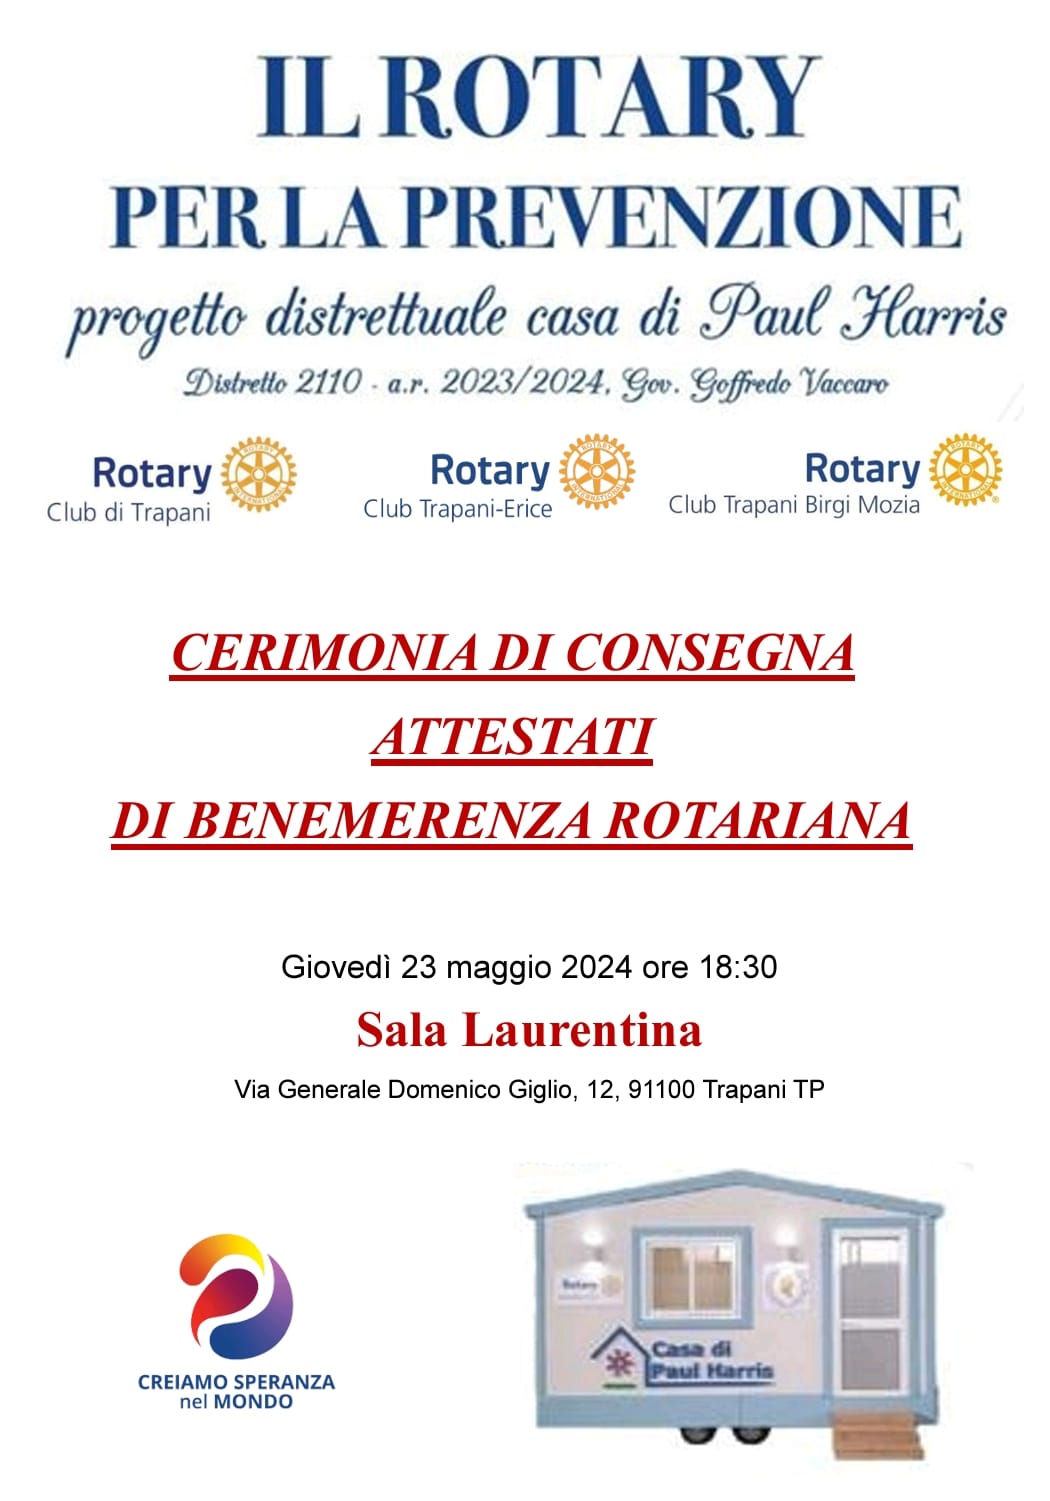 Il Rotary per la prevenzione: Cerimonia di consegna attestati di benemerenza rotariana